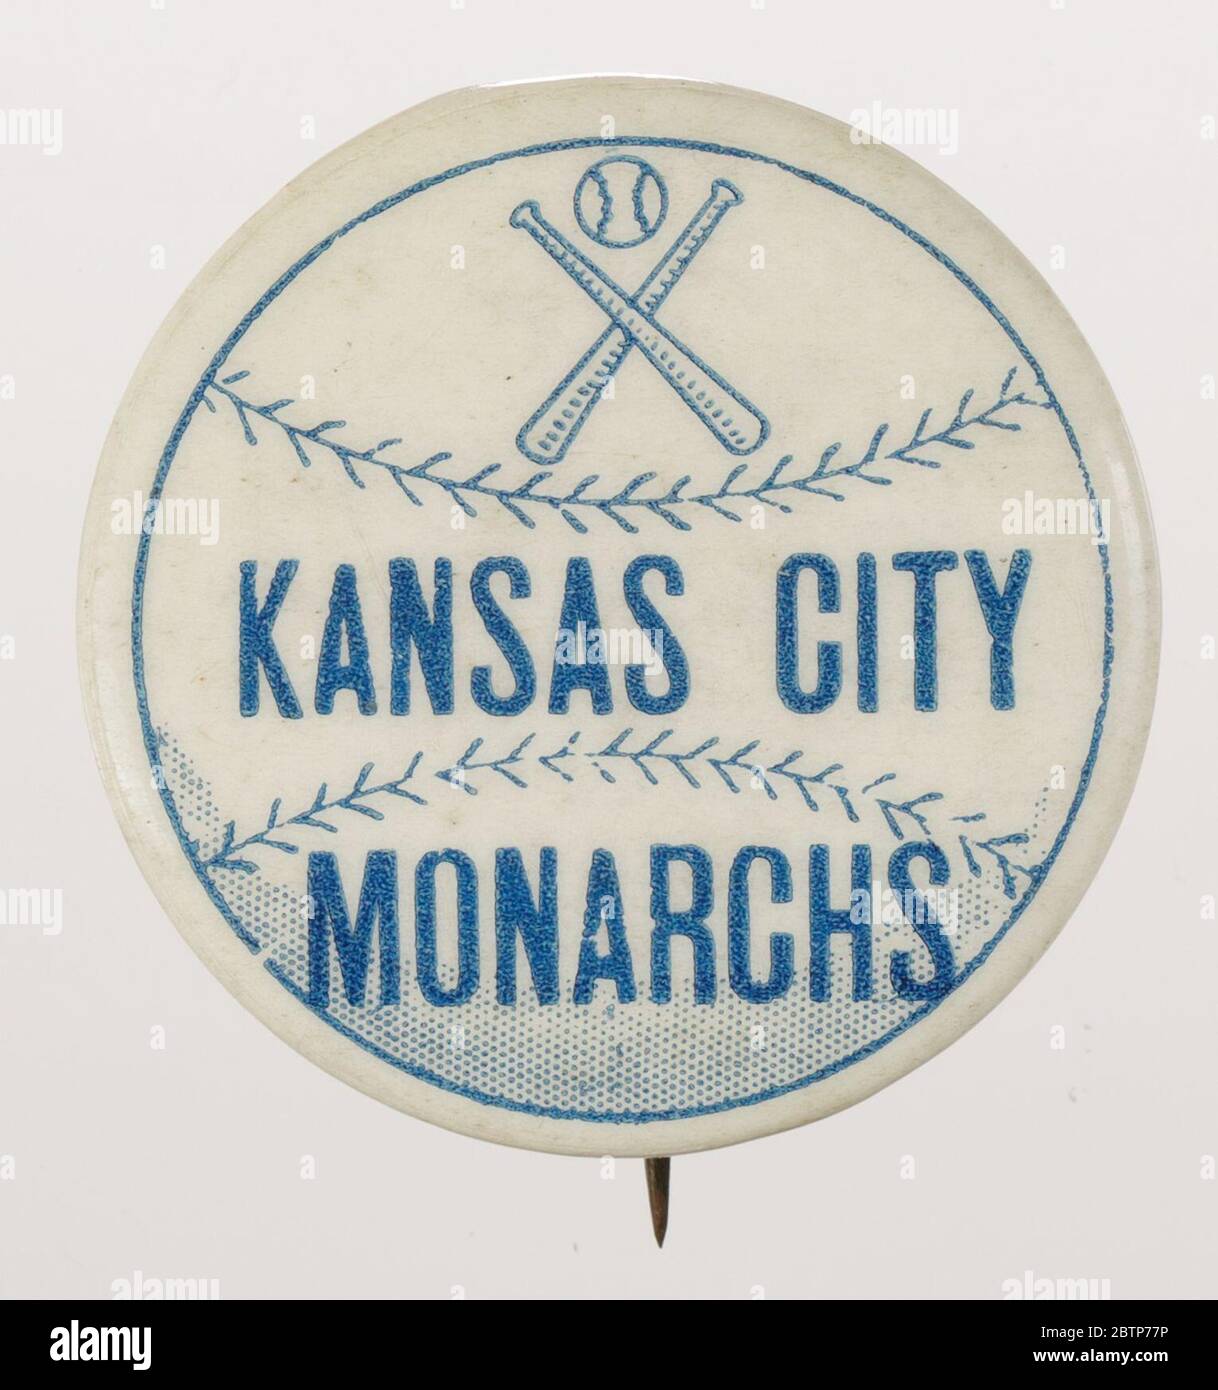 Botón Pinback para los Reyes de Kansas City. Botón de los Reyes de Kansas  City con el pasador metálico. La parte frontal del botón tiene un fondo  blanco con un dibujo de